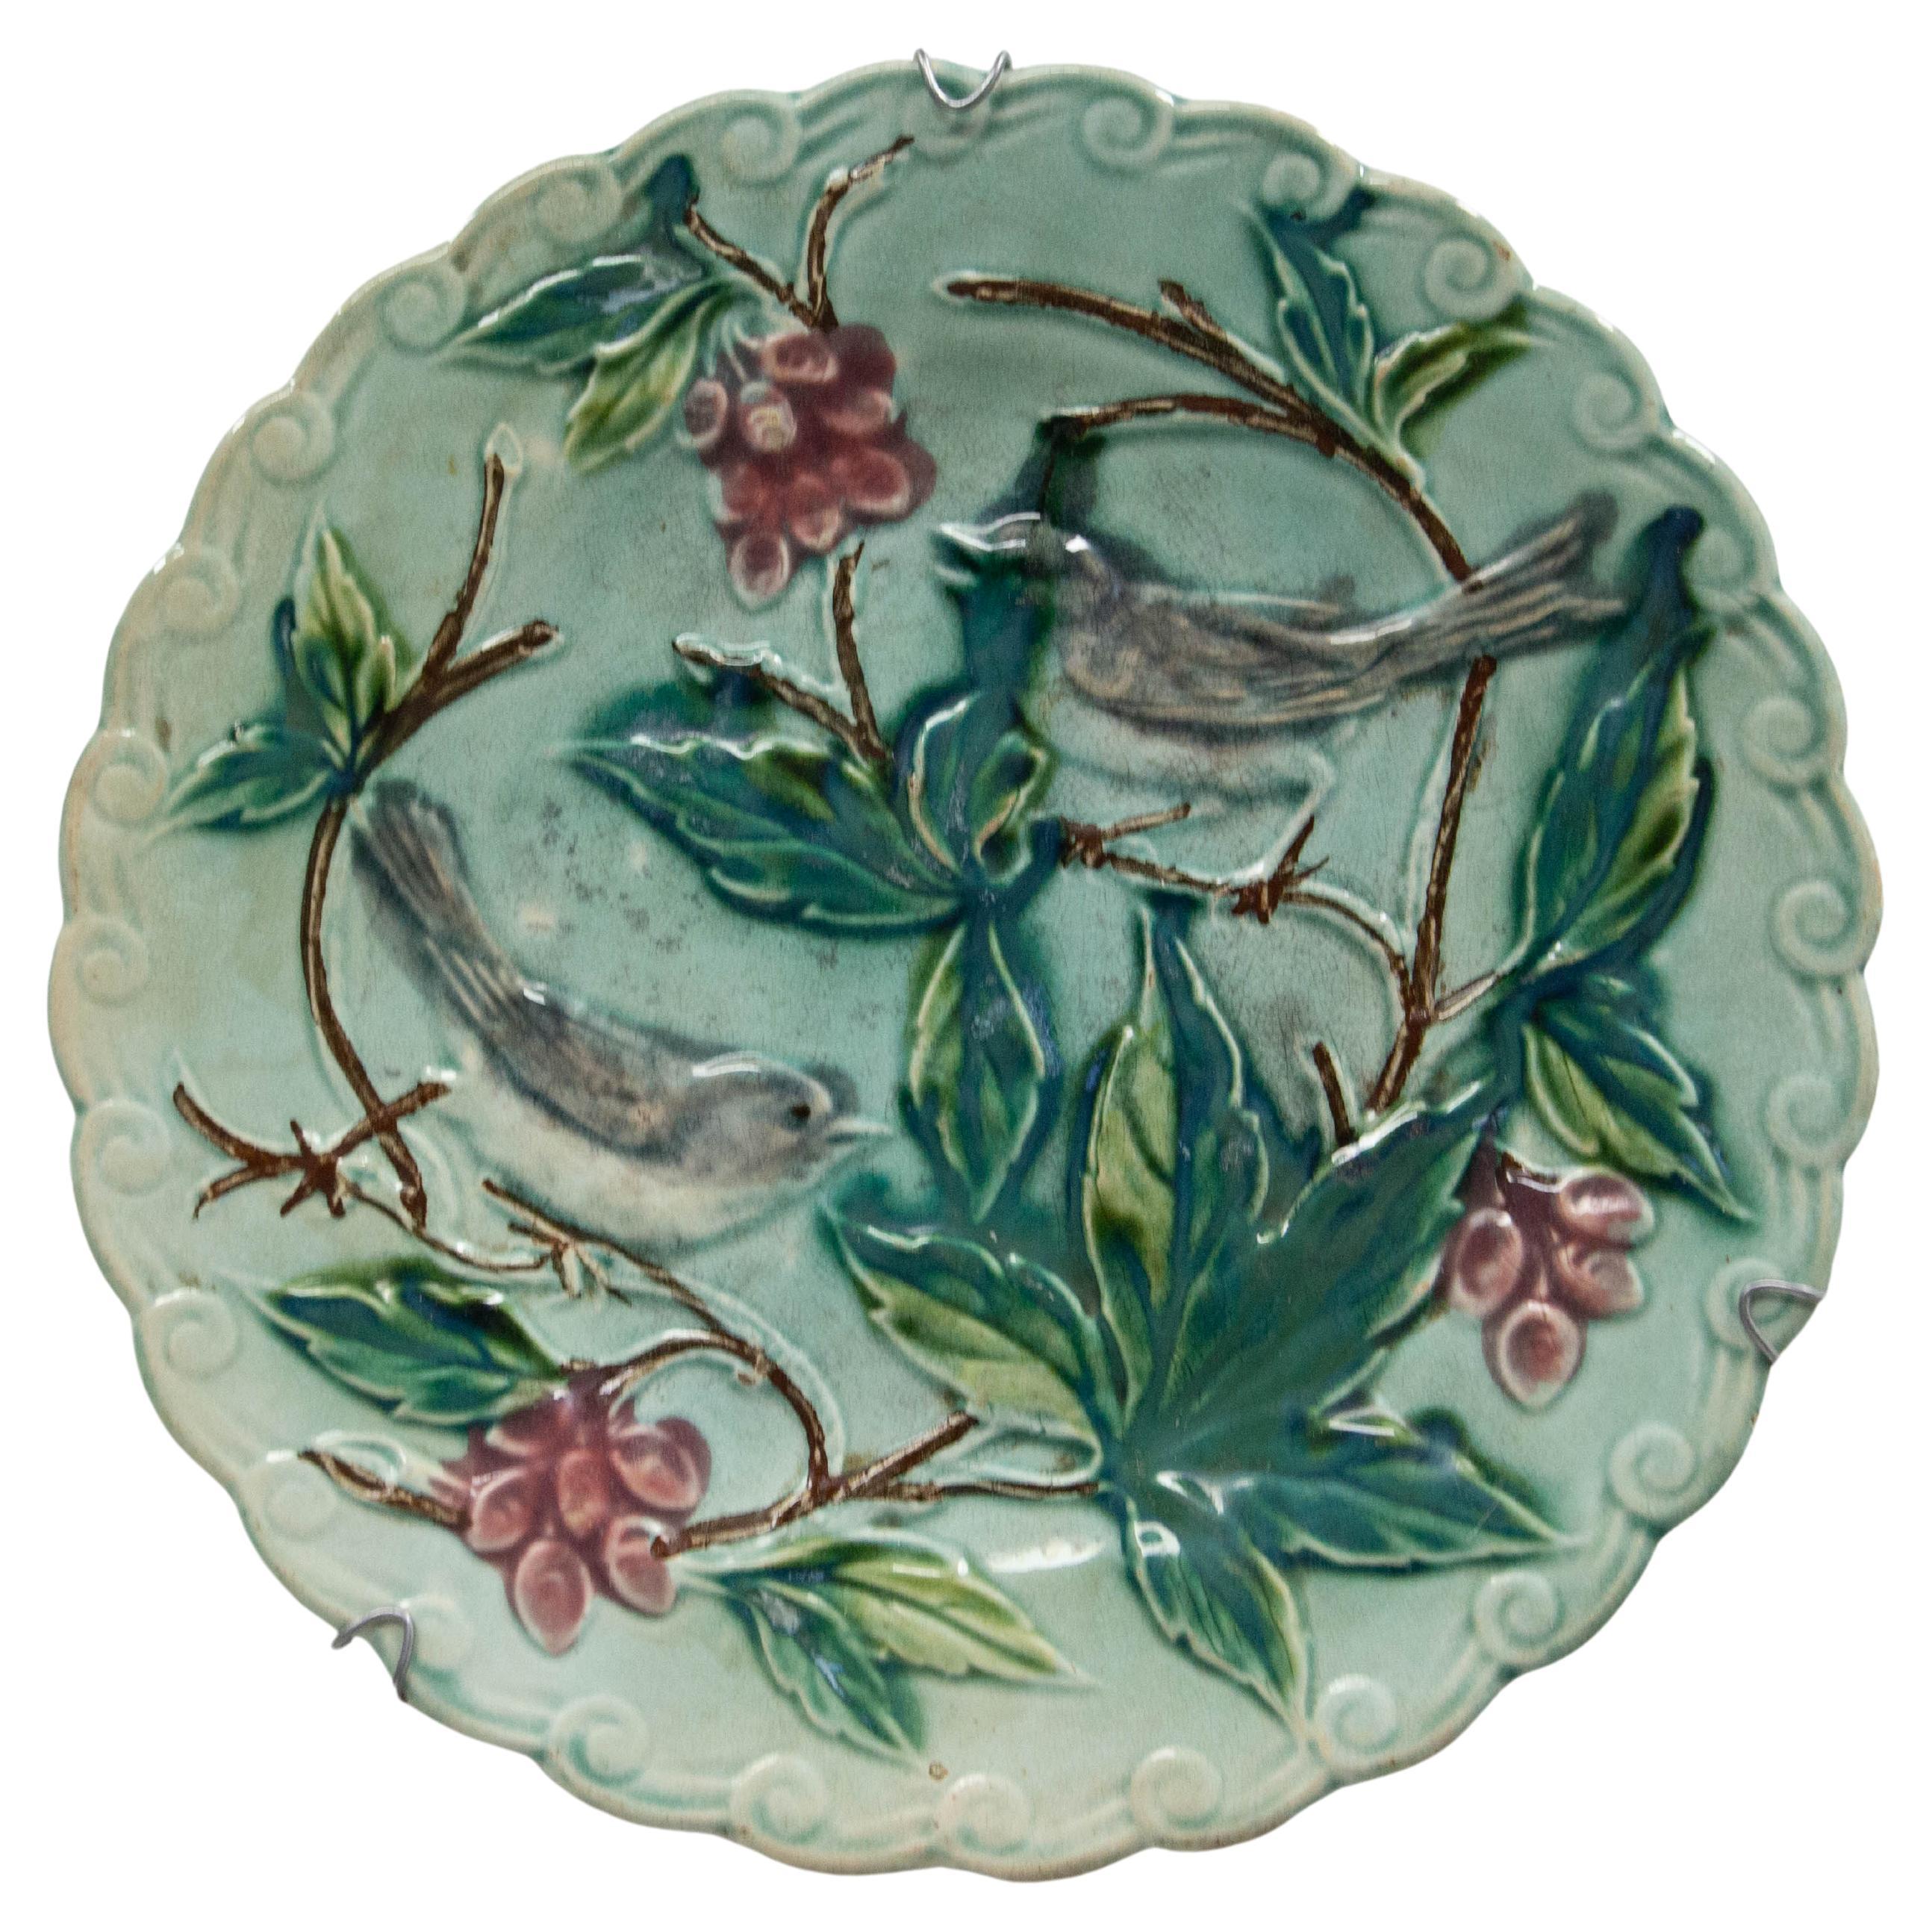 Französische emaillierte Barbotine-Teller mit Vögeln in Weinreben, spätes 19. Jahrhundert